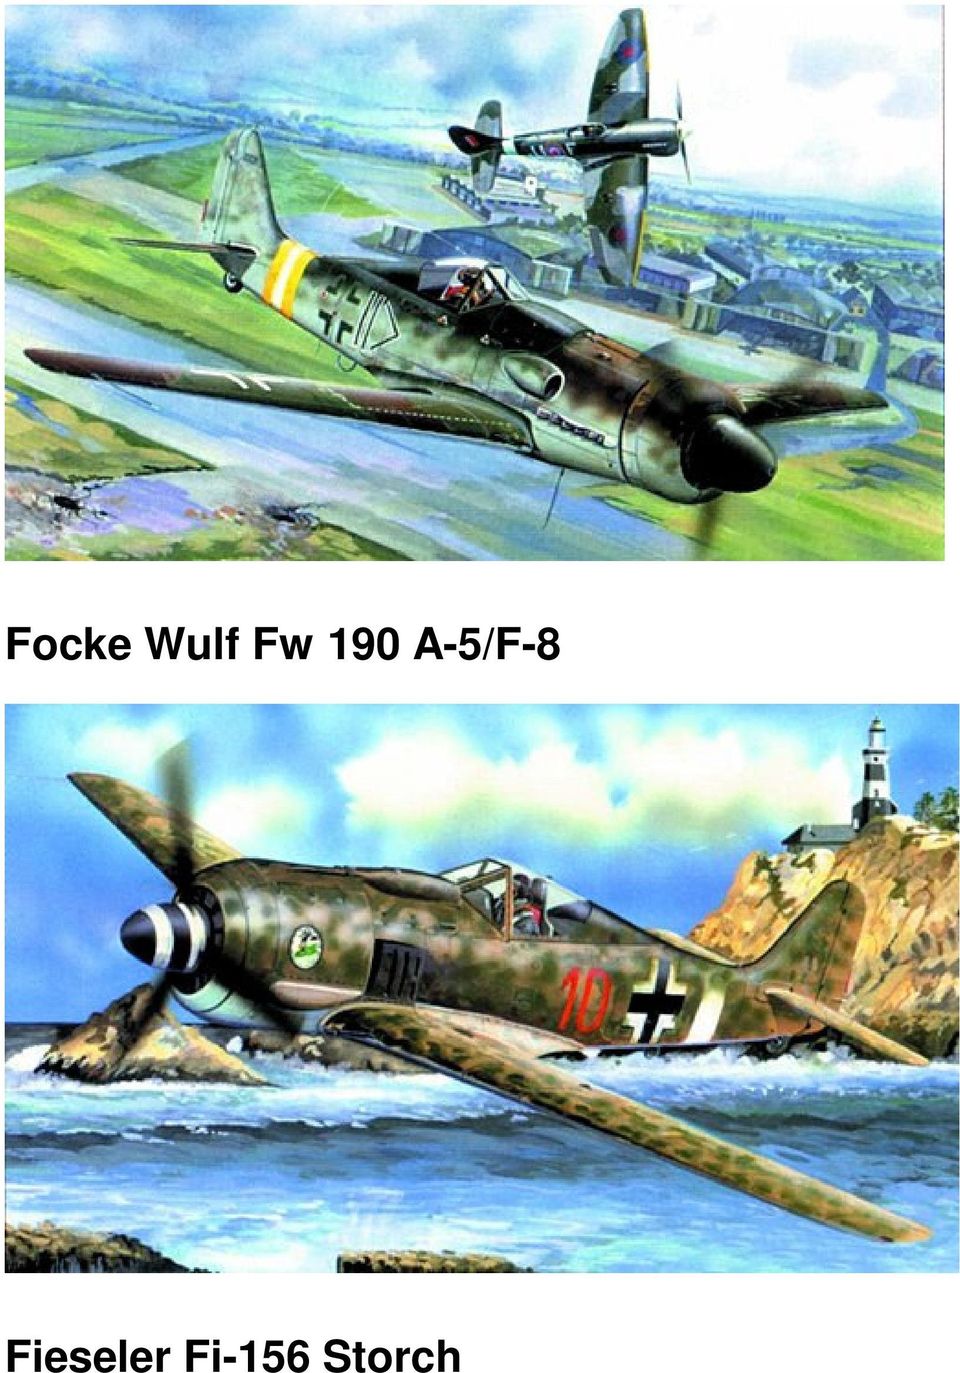 A-5/F-8